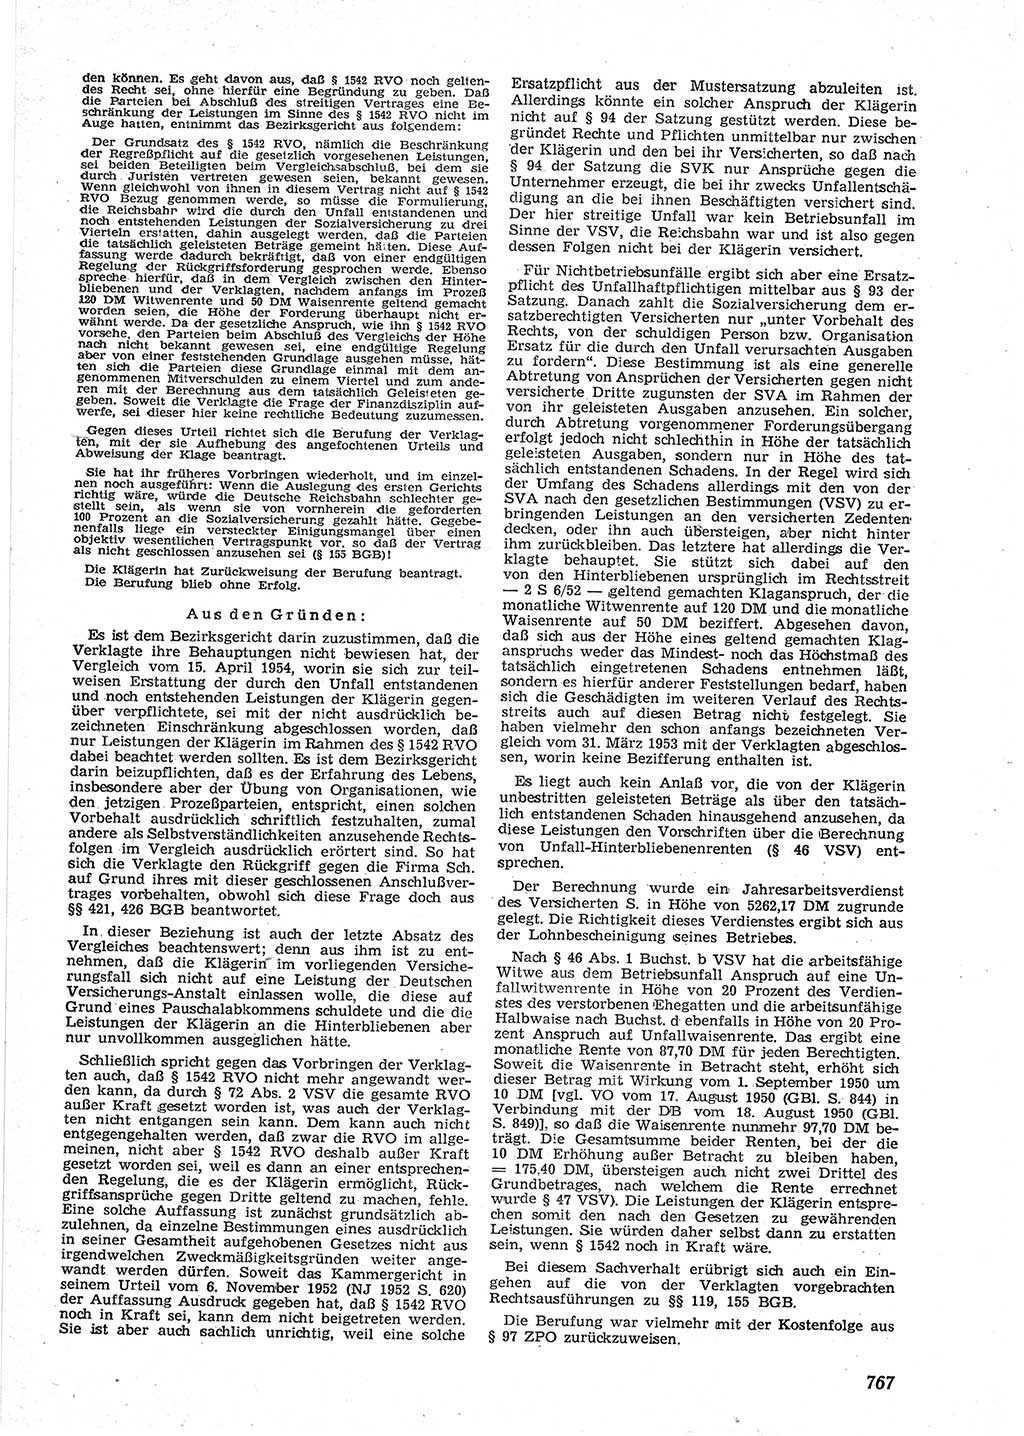 Neue Justiz (NJ), Zeitschrift für Recht und Rechtswissenschaft [Deutsche Demokratische Republik (DDR)], 9. Jahrgang 1955, Seite 767 (NJ DDR 1955, S. 767)